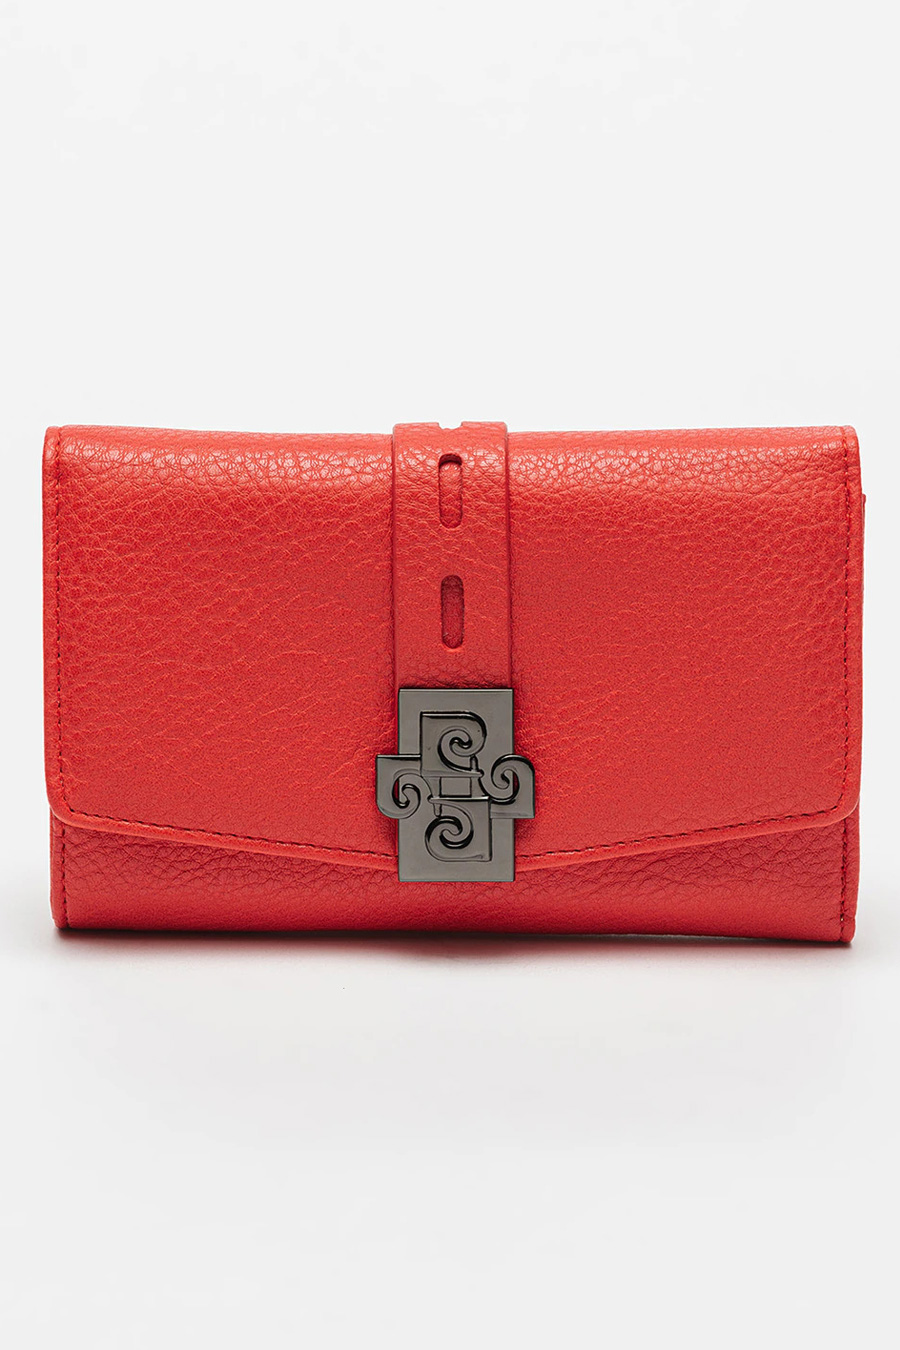 Wallet PIERRE CARDIN PC-1695-LADY-45-ROSSO